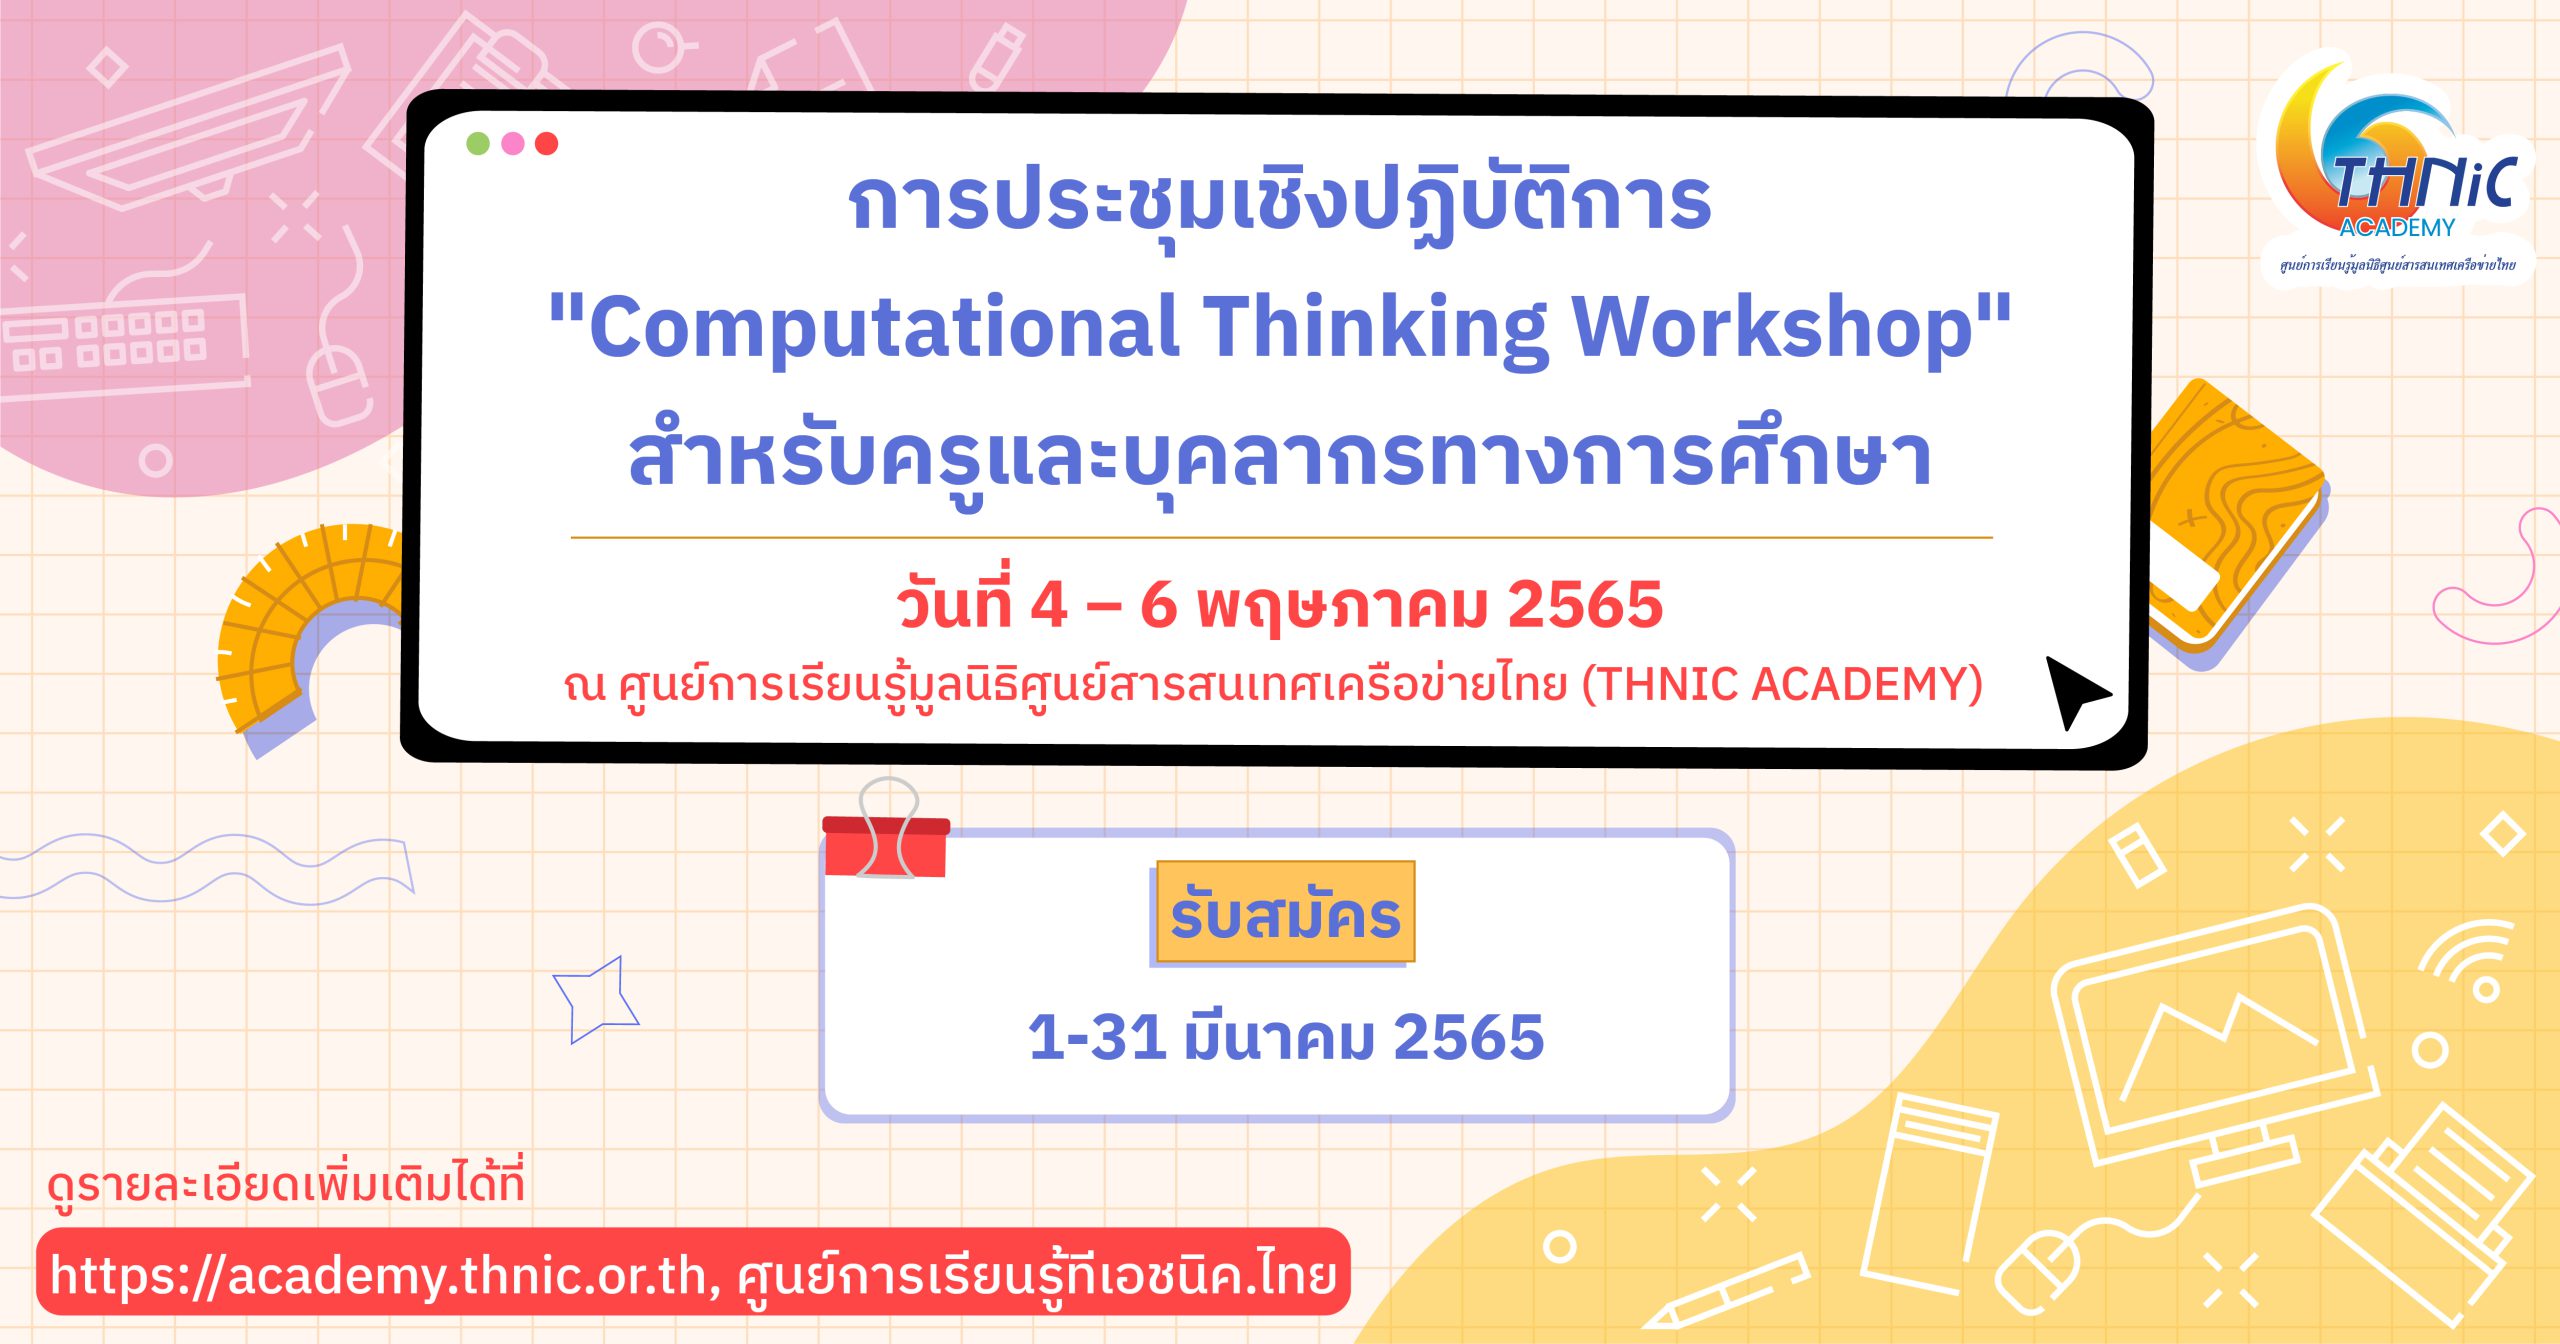 การประชุมเชิงปฏิบัติการ “Computational Thinking Workshop” สำหรับครูและบุคลากรทางการศึกษา